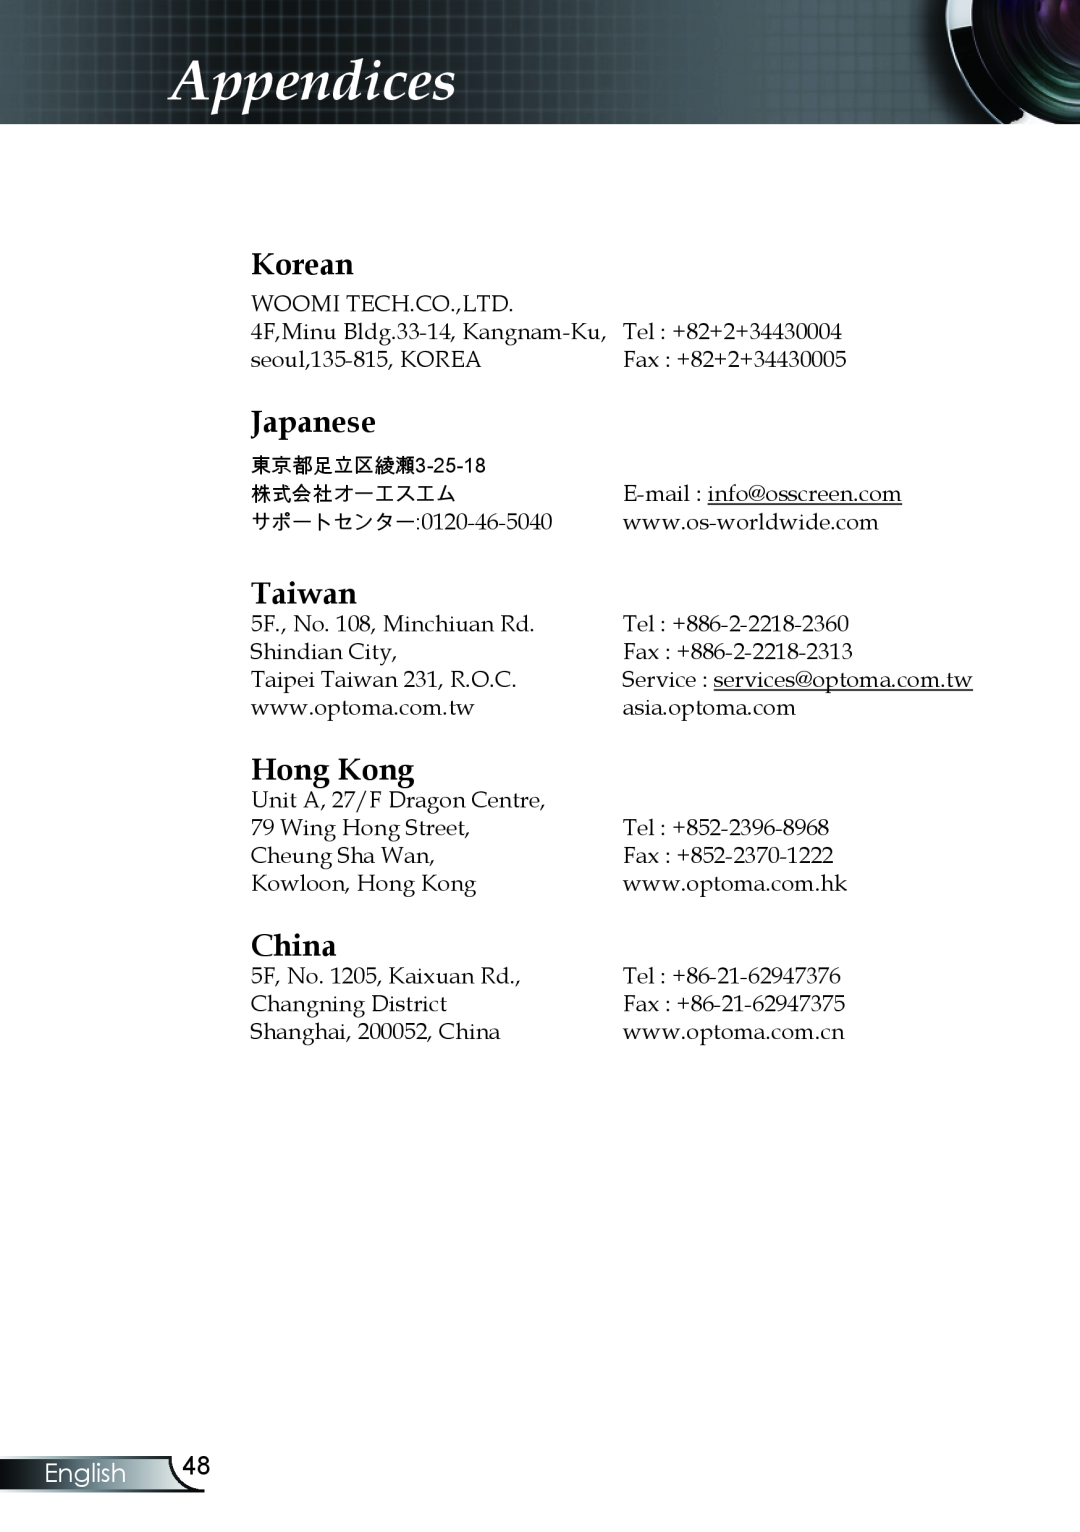 Optoma Technology TX330 manual Korean, Japanese, Taiwan, Hong Kong, China, Appendices, English 